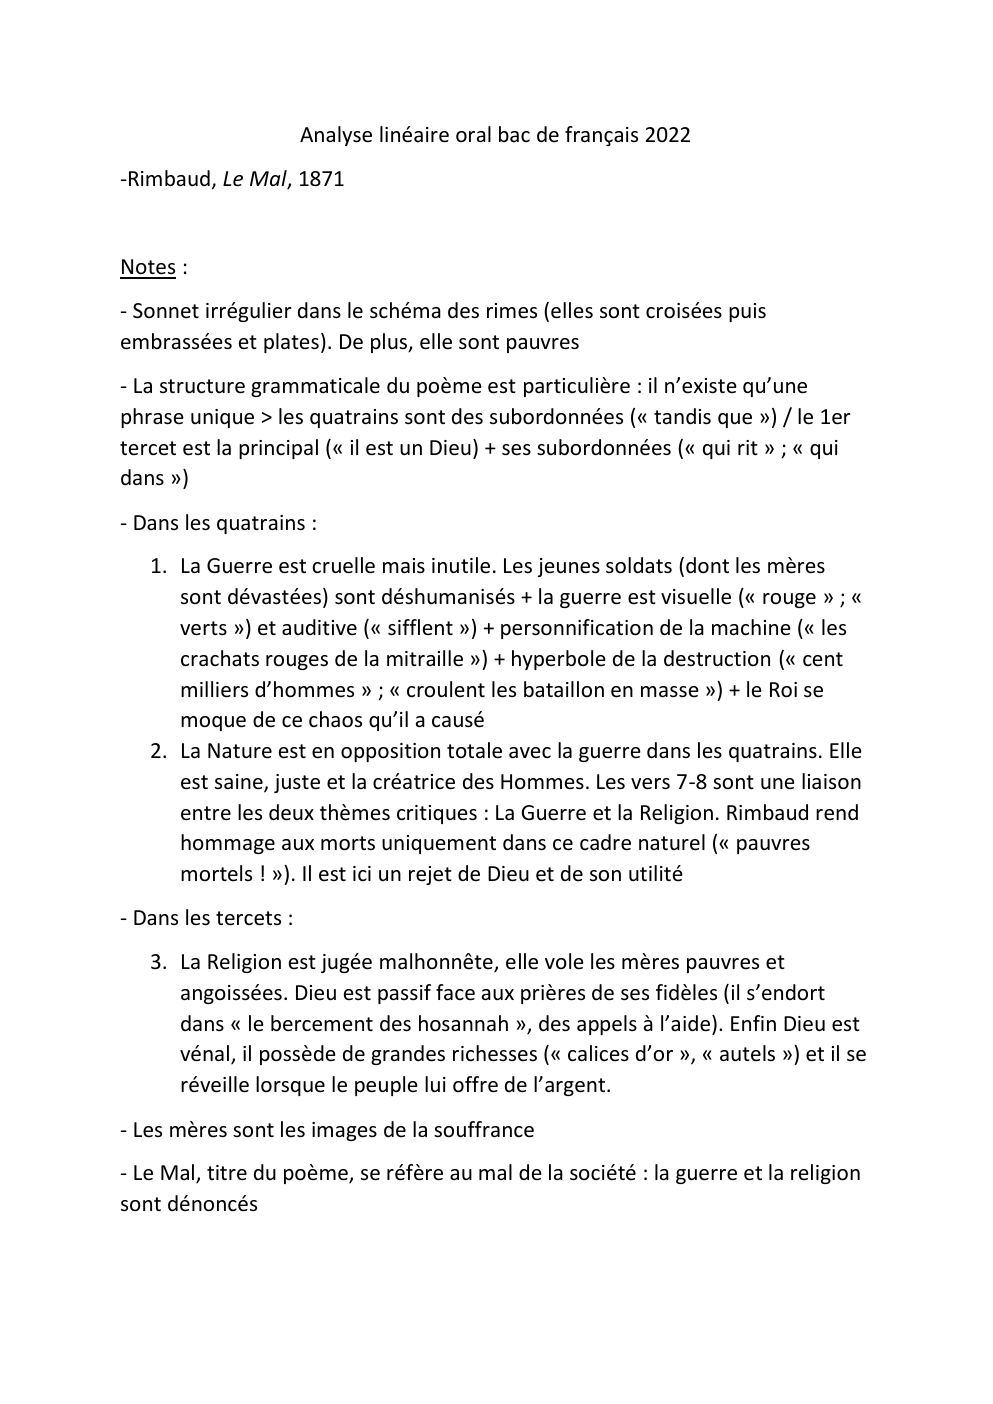 Prévisualisation du document analyse linéaire "Le Mal" de Rimbaud